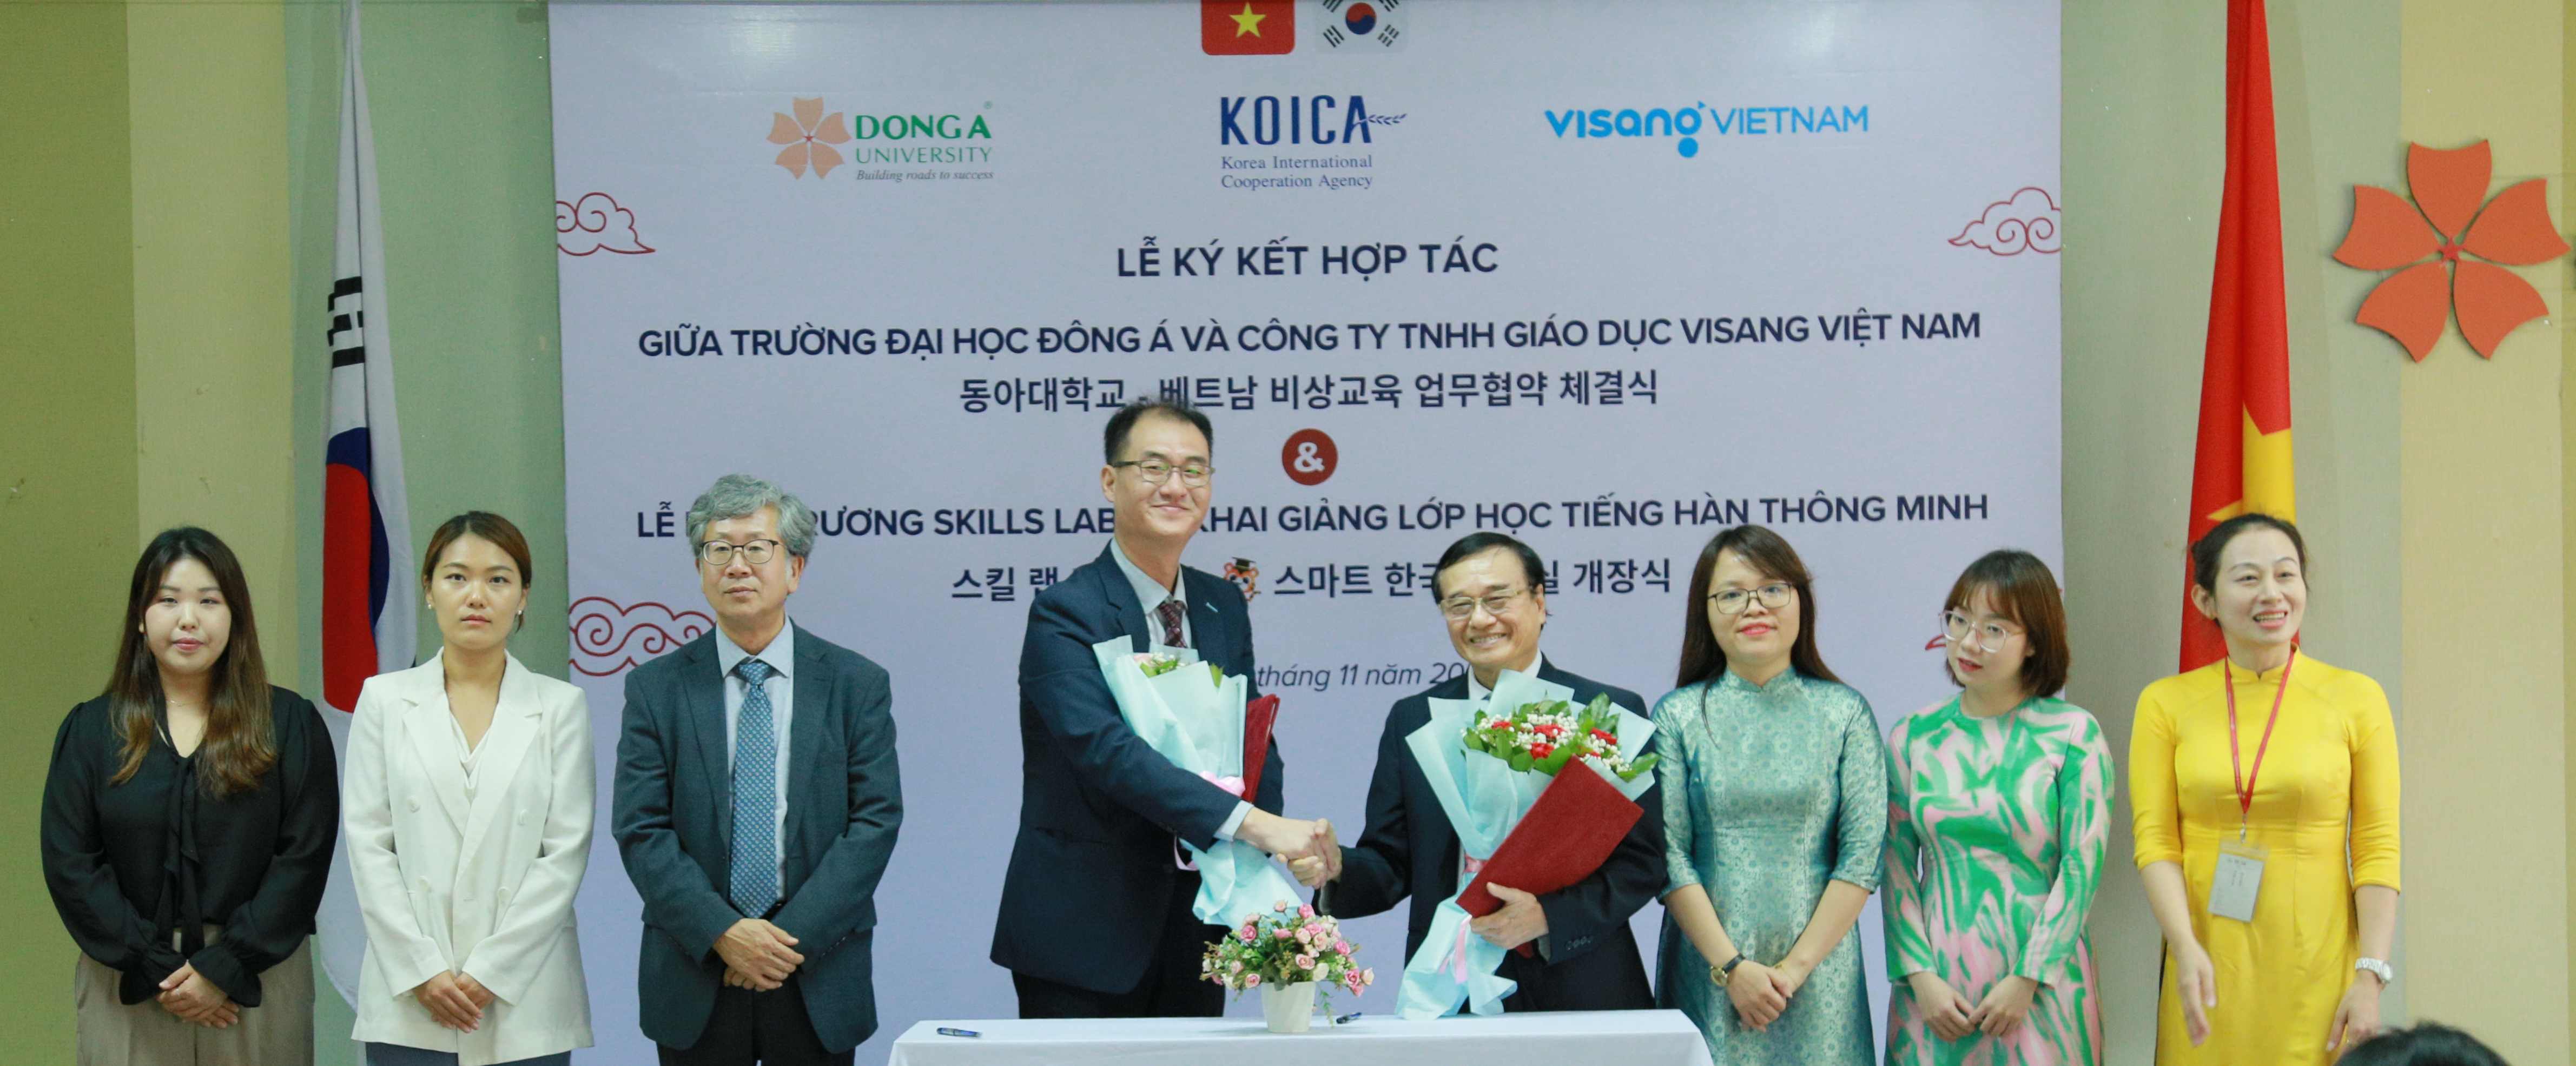 Đại học Đông Á và Công ty TNHH Giáo dục Visang Việt Nam chính thức ký kết thoả thuận hợp tác về Giải pháp học tập tiếng Hàn thông minh